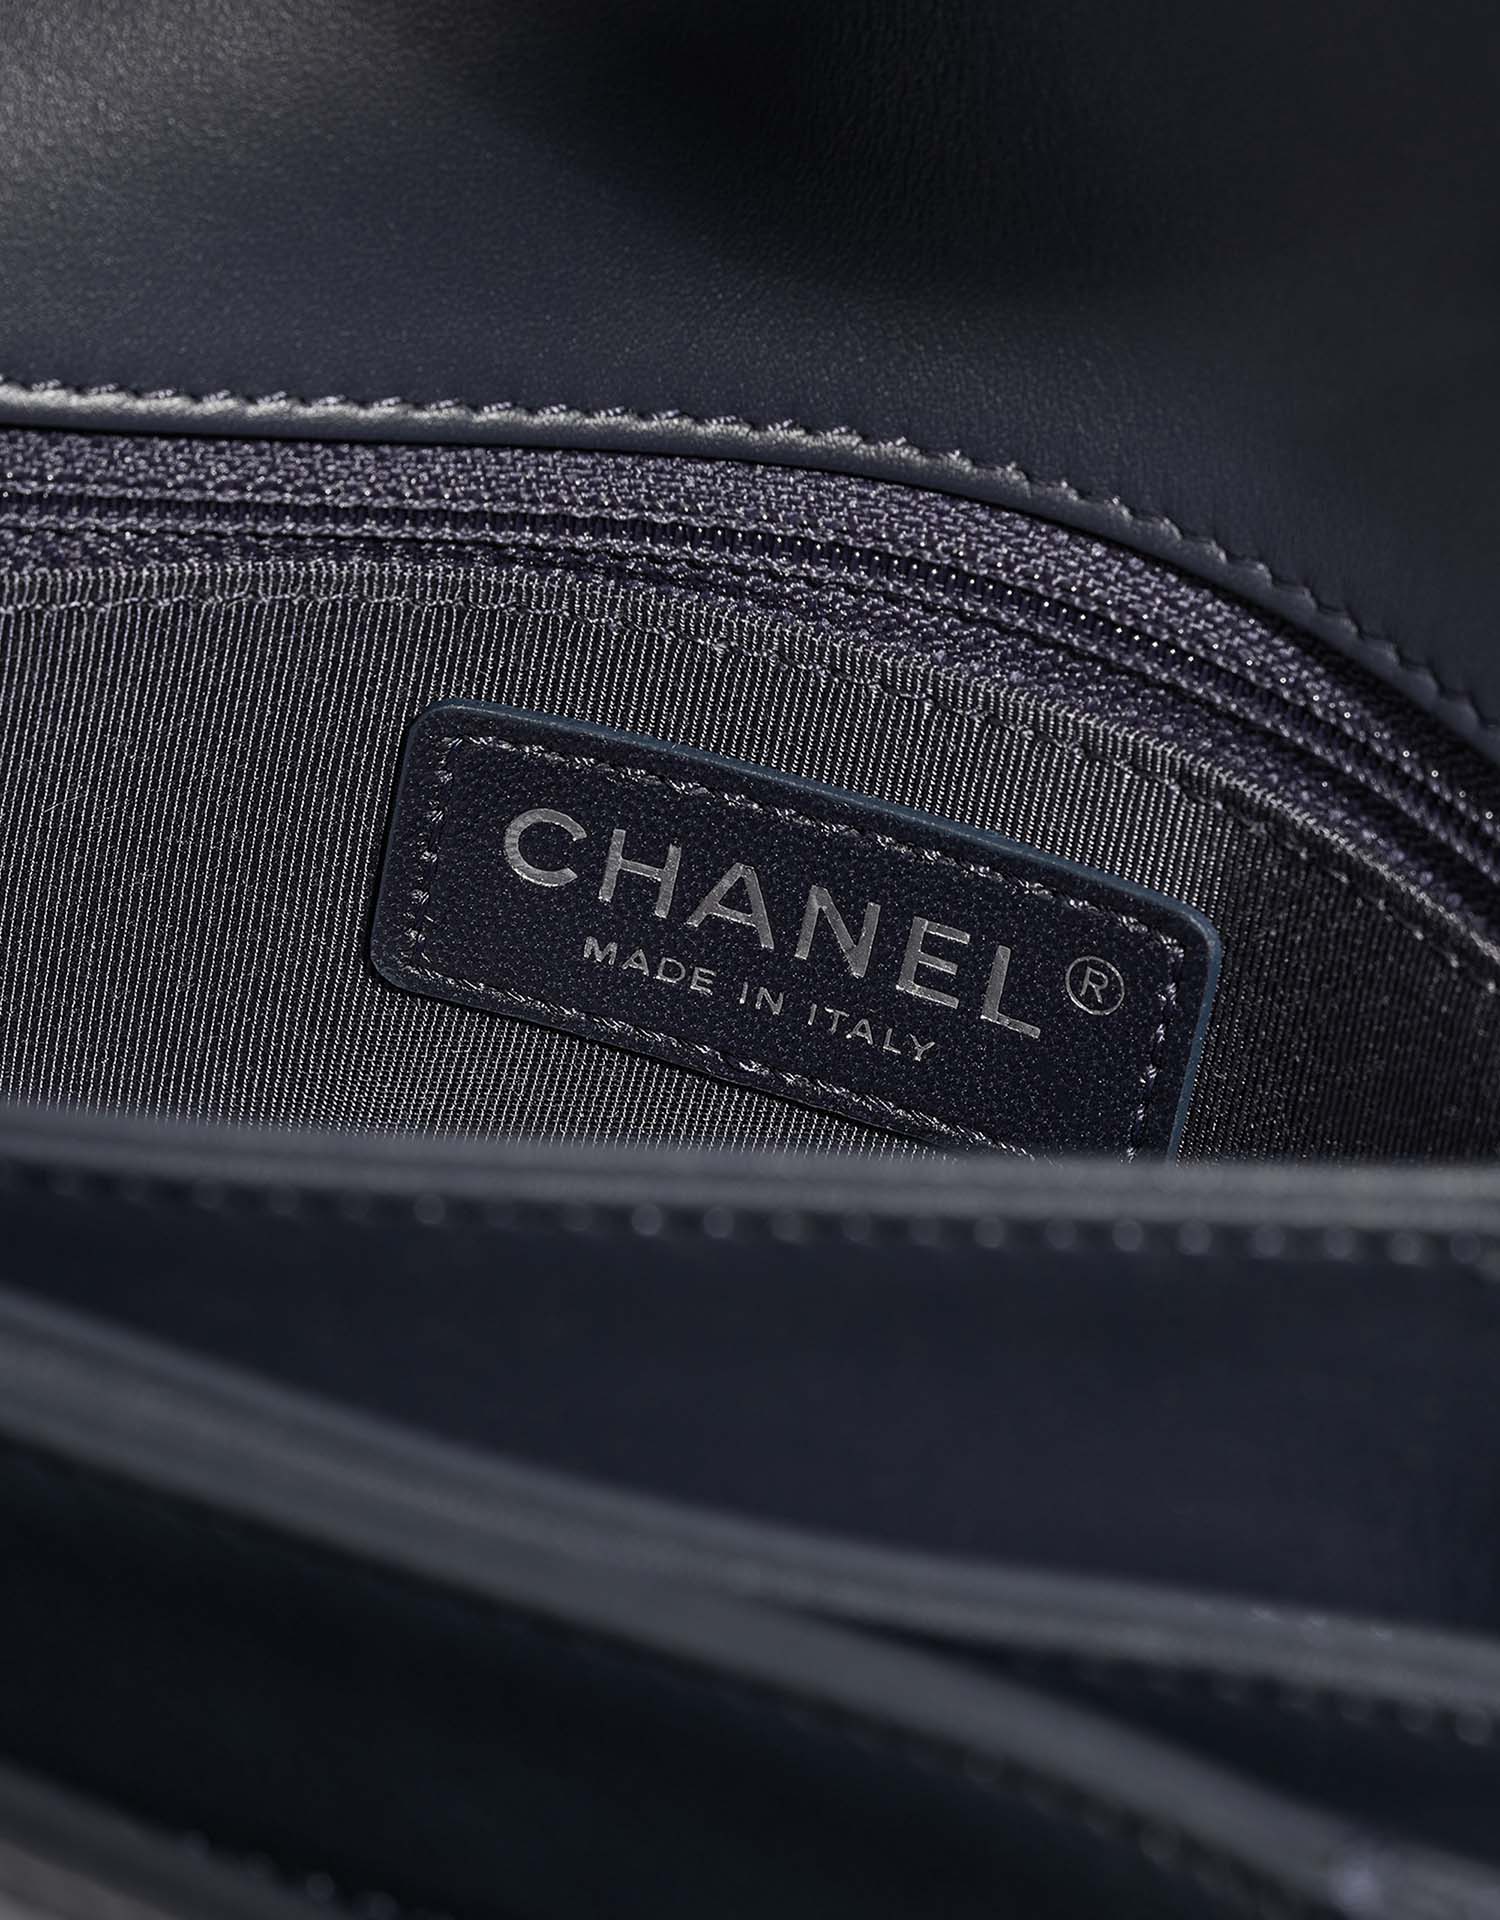 Chanel TimelessTramezzo Medium Navy Logo | Verkaufen Sie Ihre Designer-Tasche auf Saclab.com